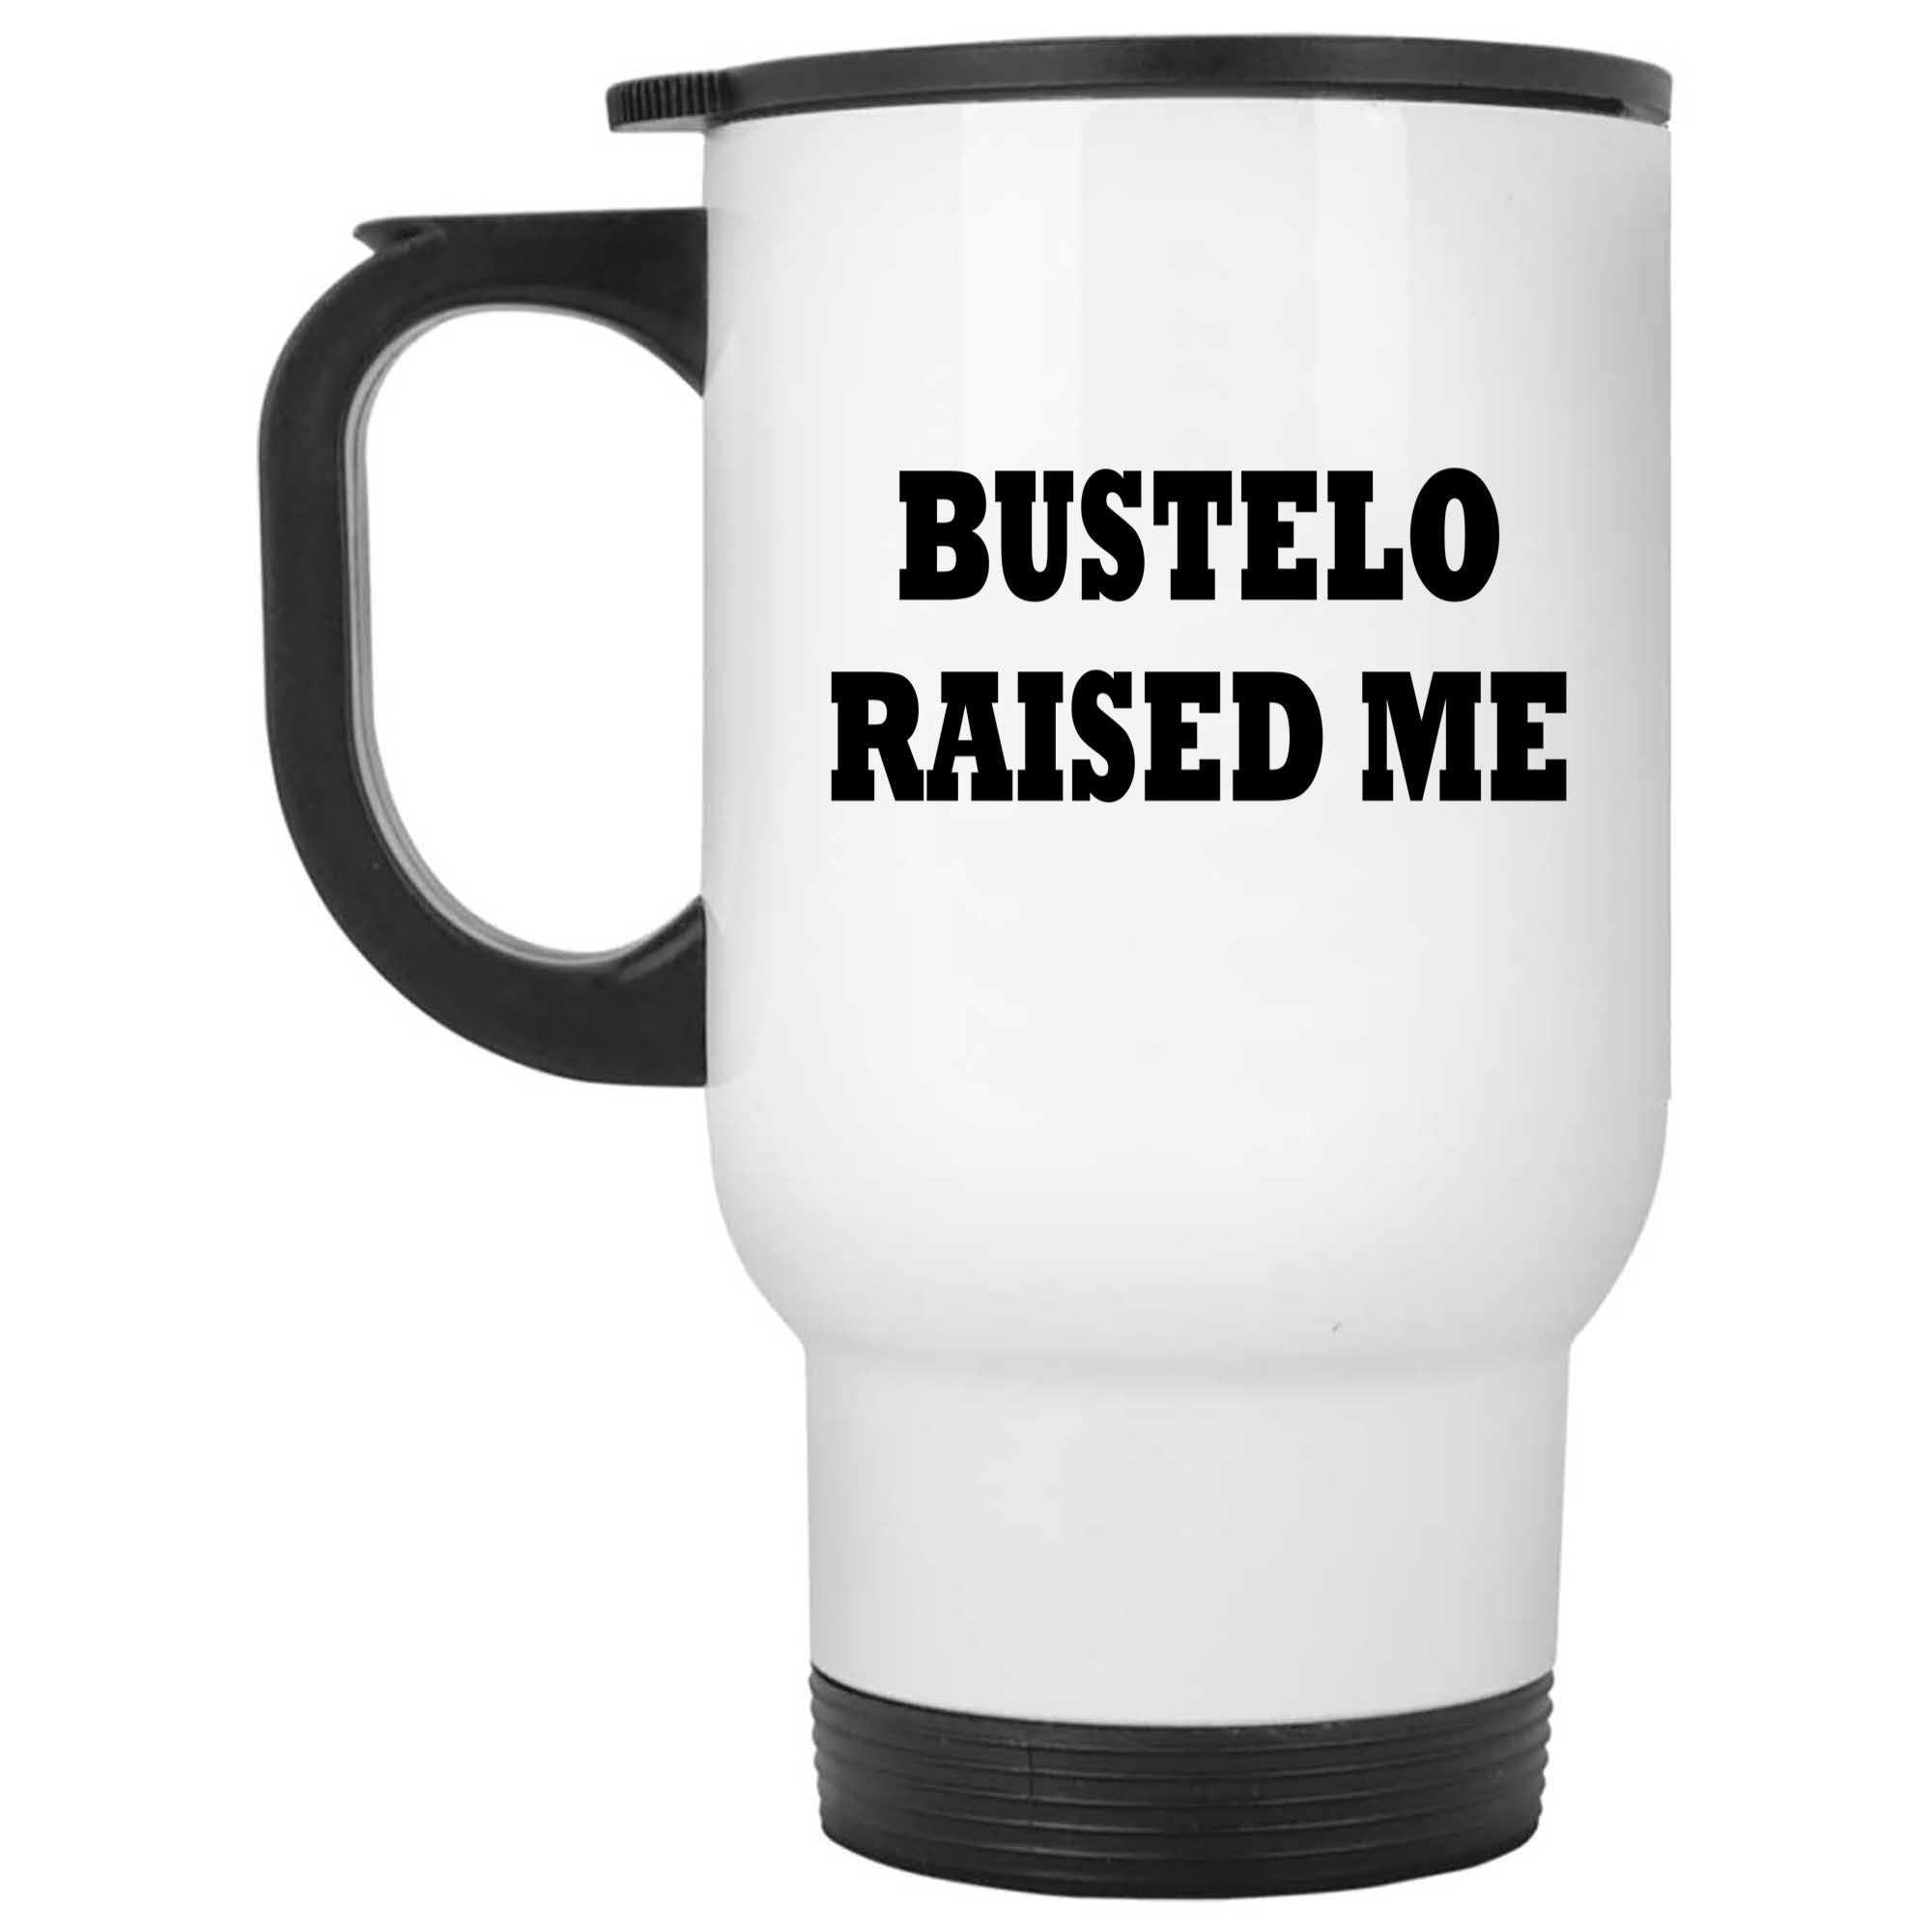 Skitongifts Funny Ceramic Novelty Coffee Mug Bustelo Raised Me Spanish mzUWMGu